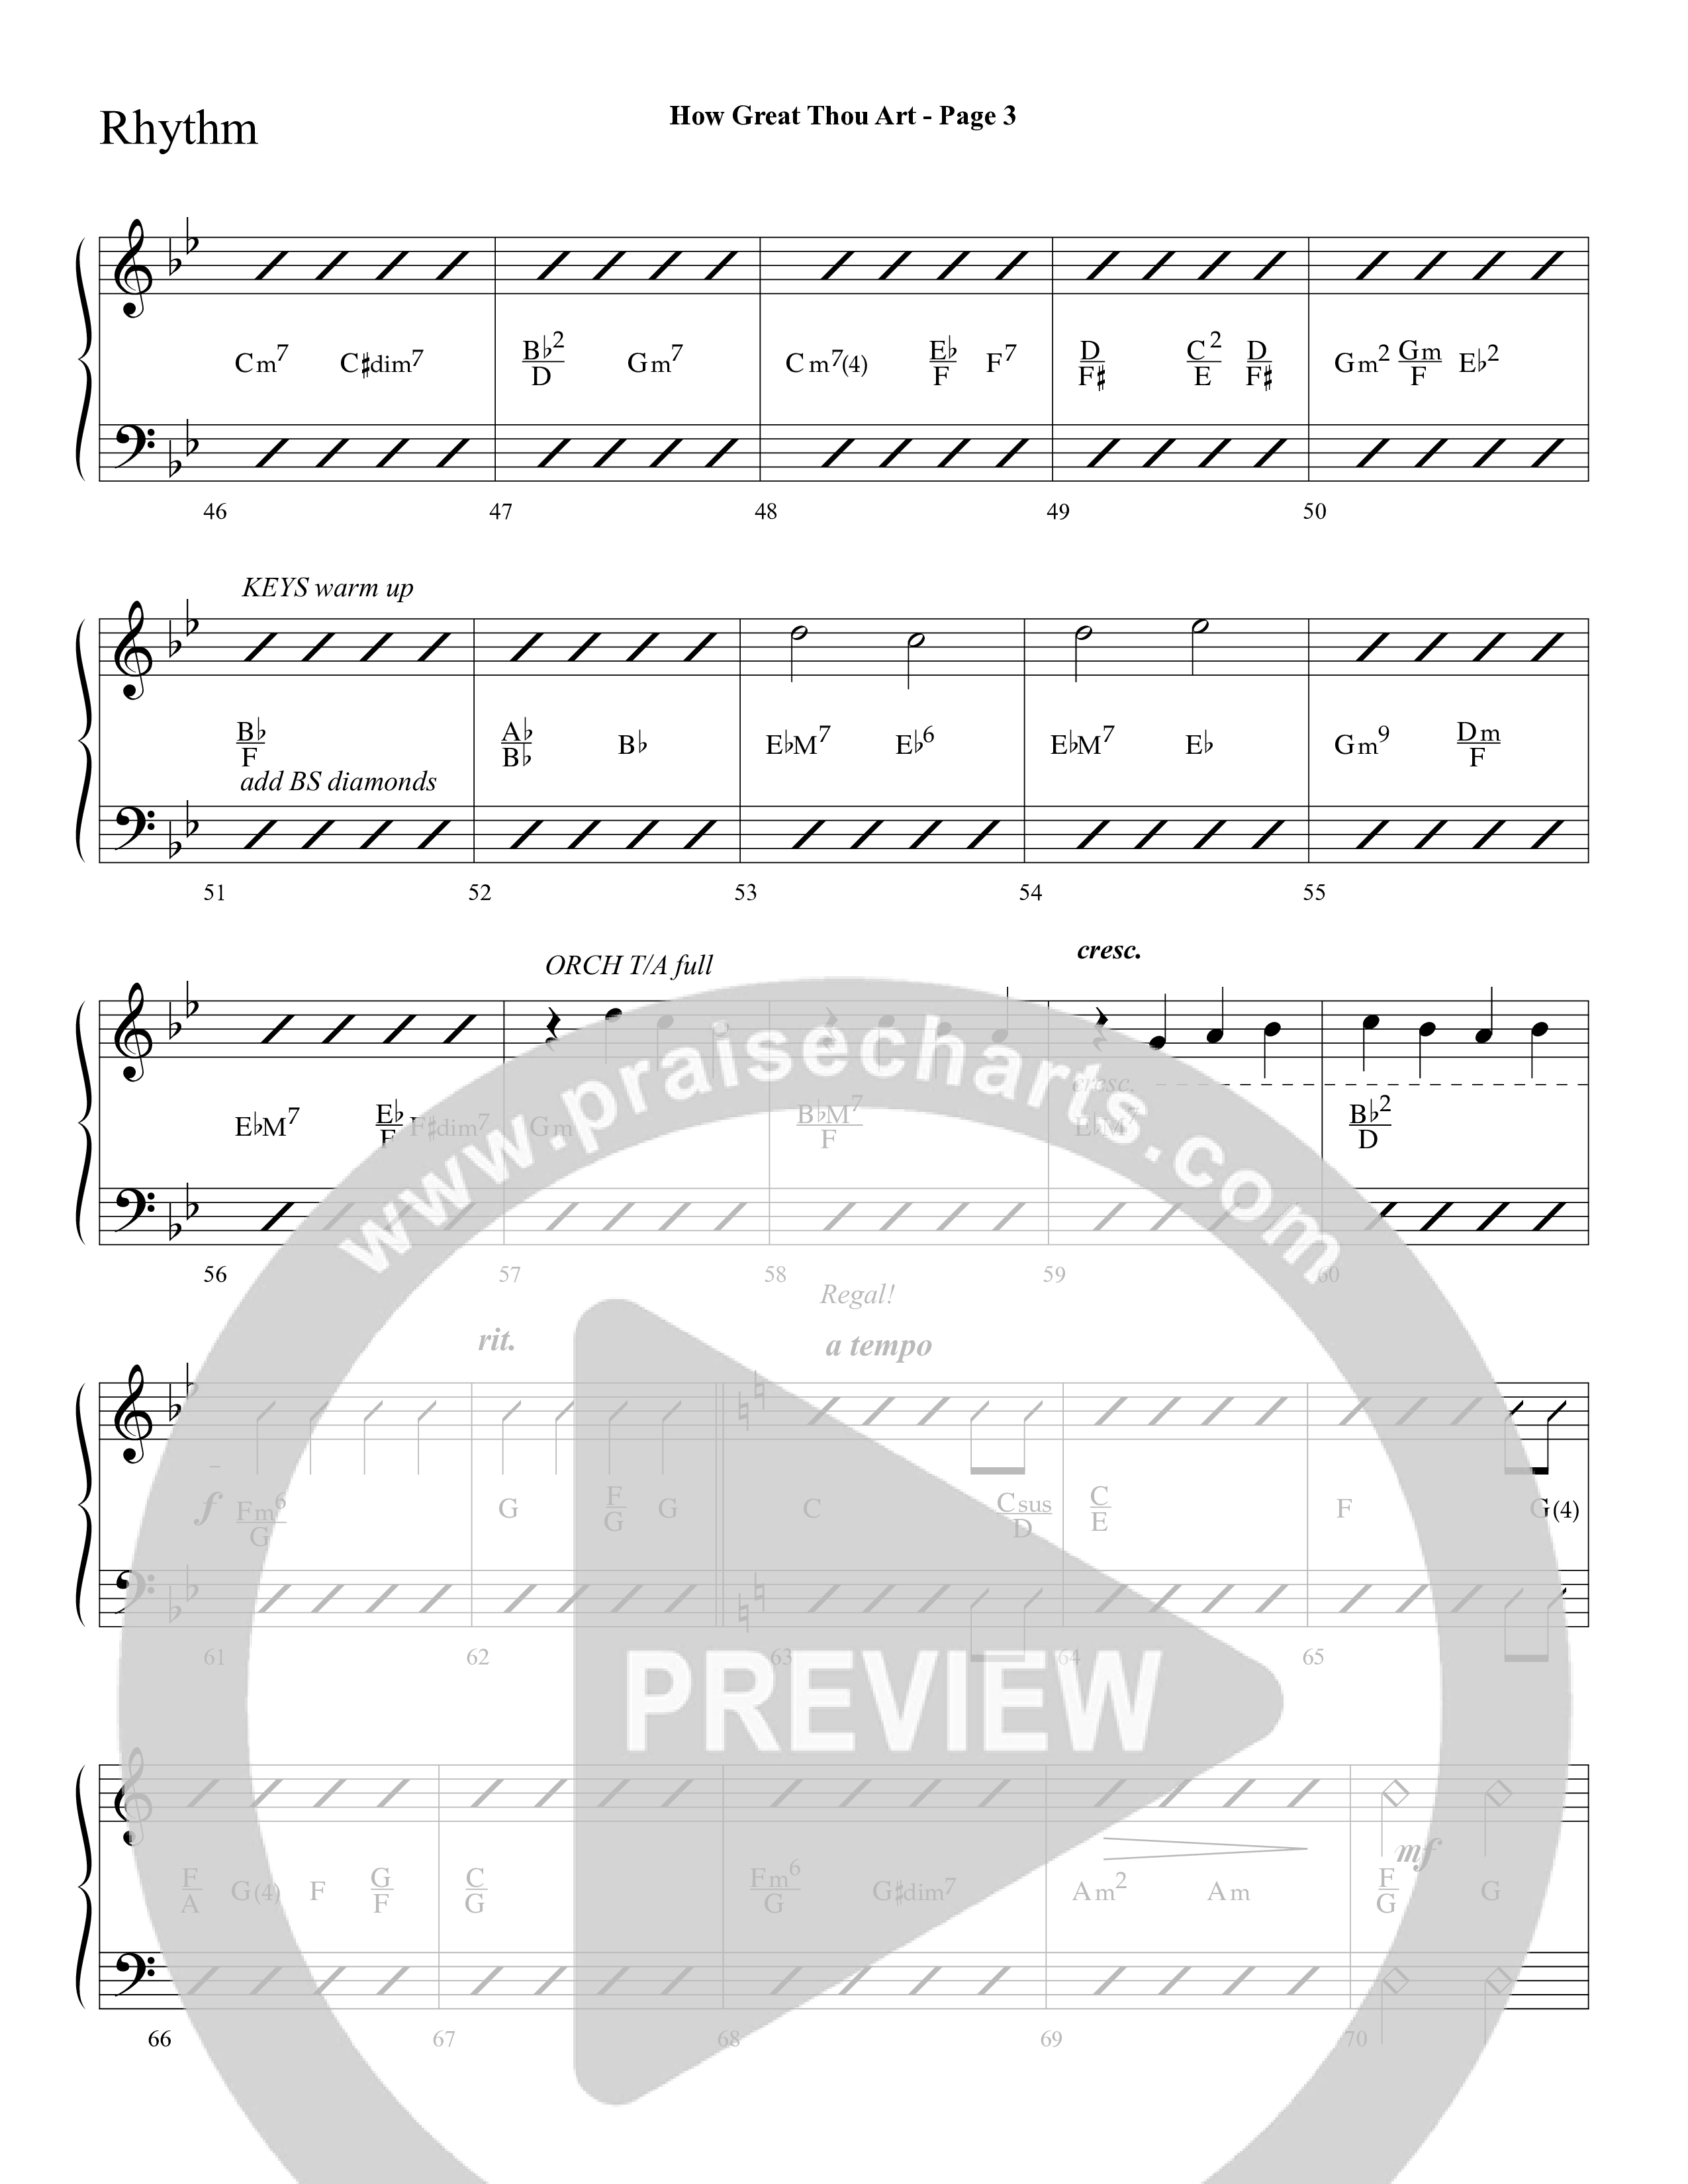 How Great Thou Art (Choral Anthem SATB) Lead Melody & Rhythm (Lifeway Choral / Arr. Dave Williamson)